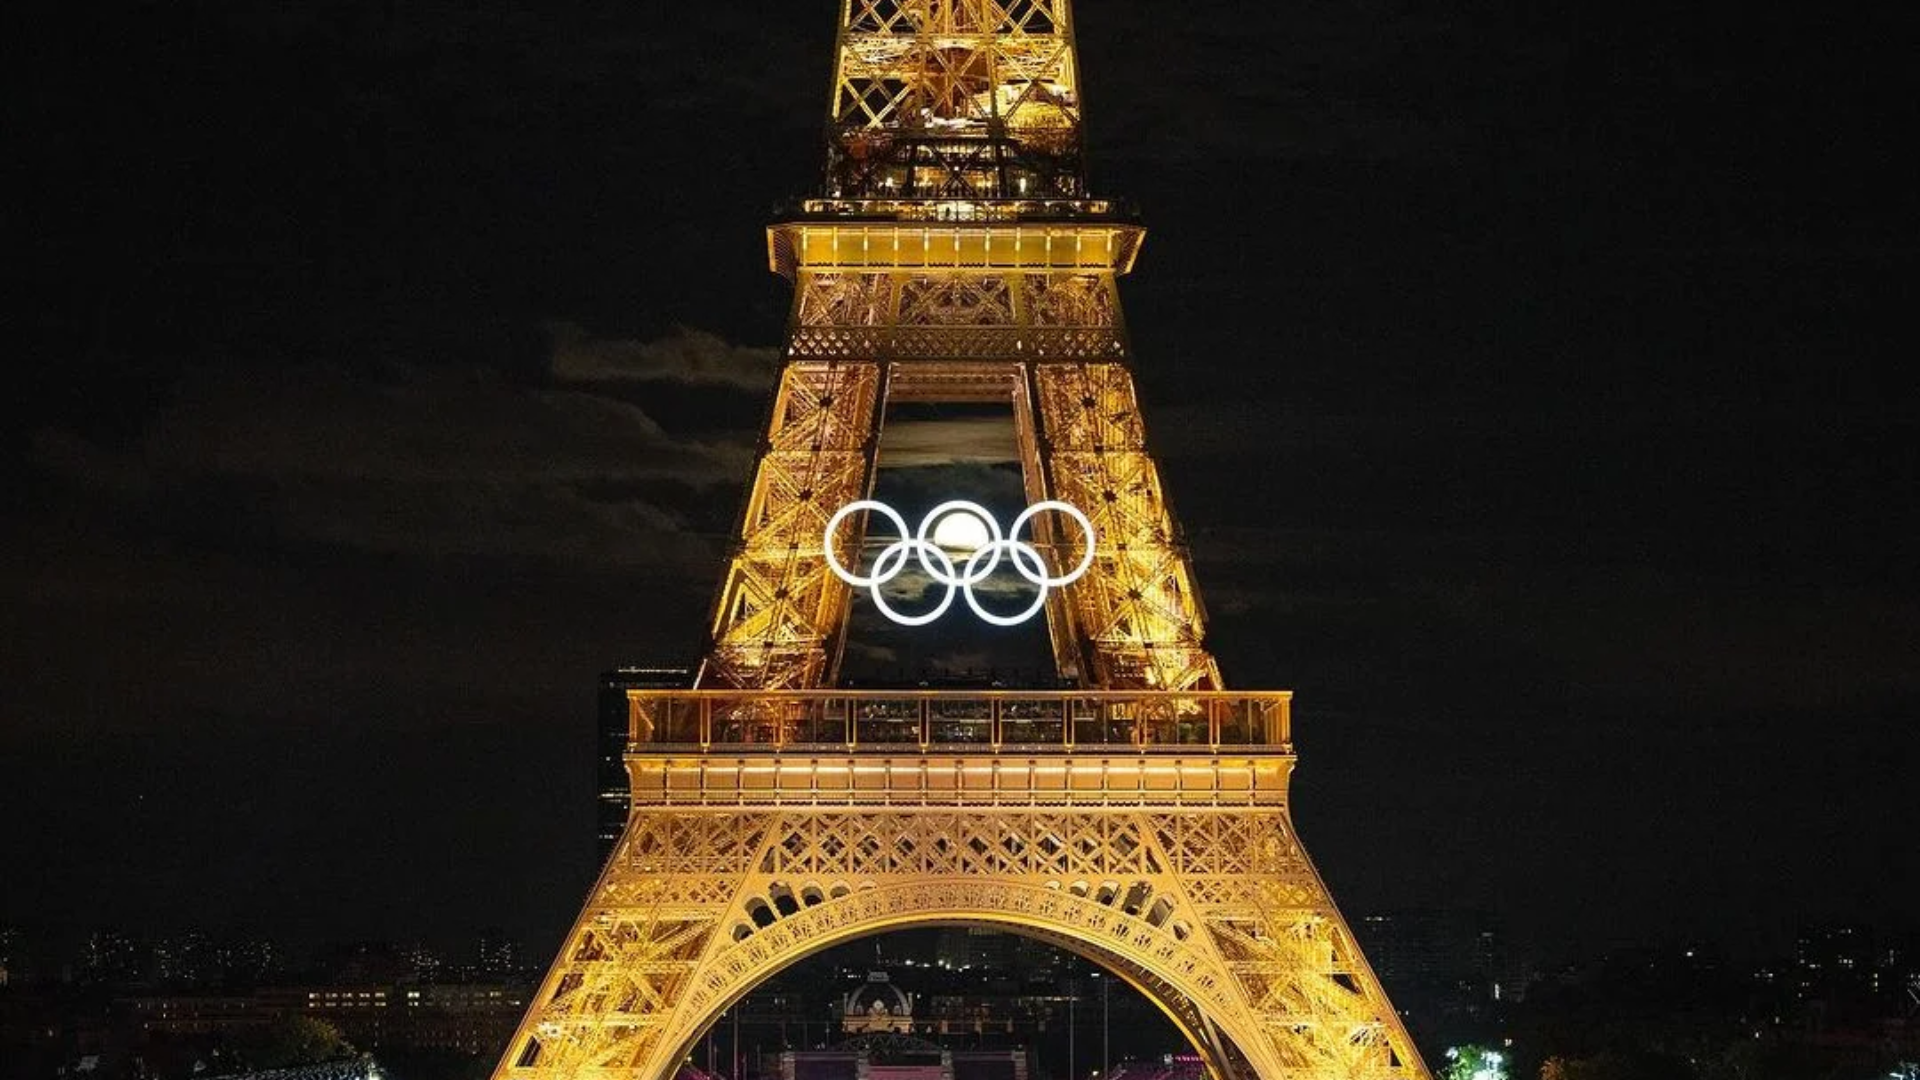 París y Los Ángeles compitieron por los Juegos Olímpicos de 2024, pero finalmente fue la capital francesa la elegida por el COI gracias a su rica cultura e infraestructura. Foto tomada de: Col Global